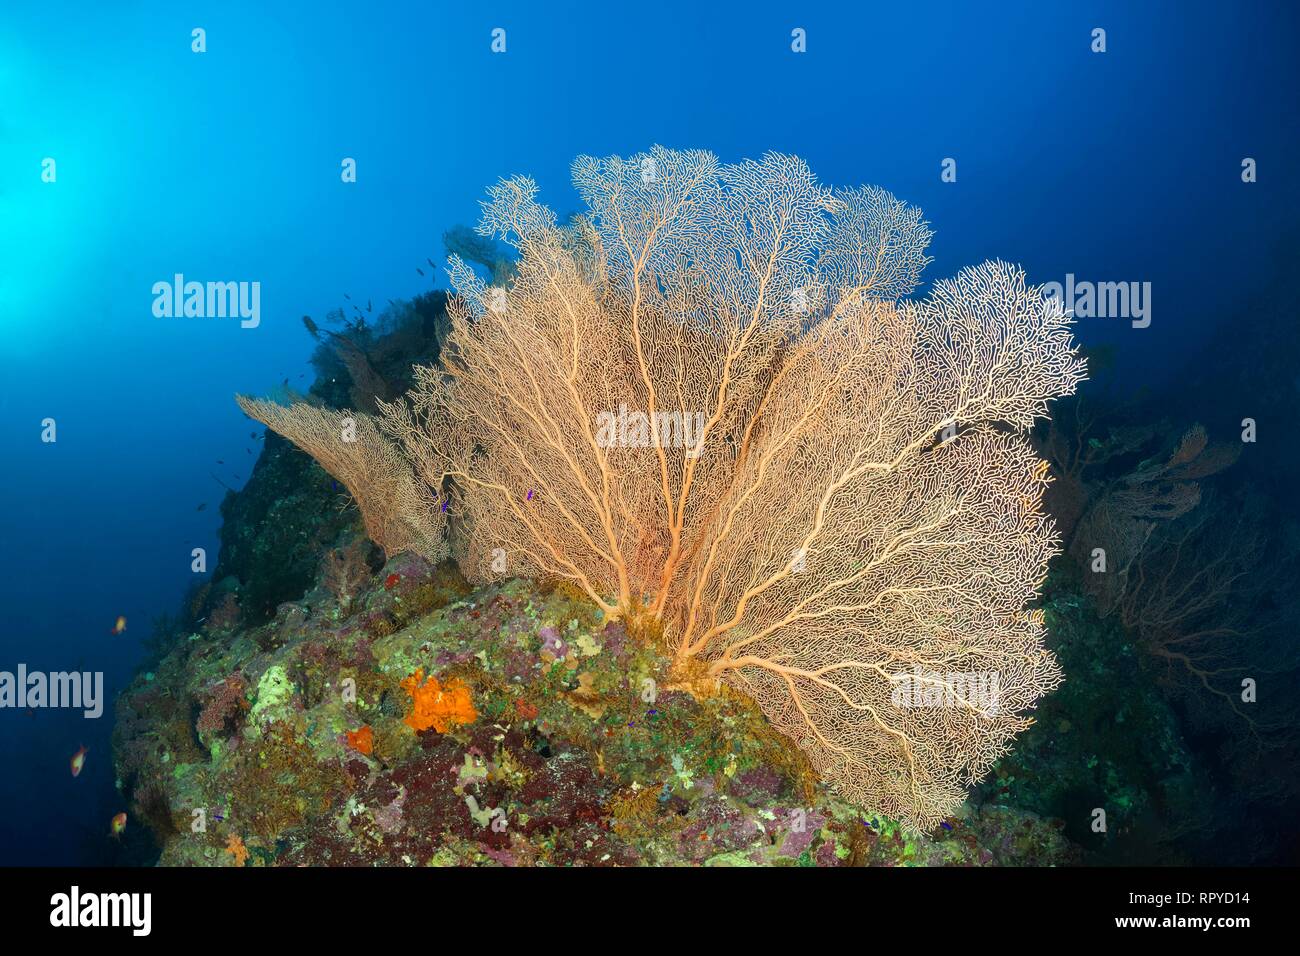 Arrecifes de Coral Ridge con fan de mar gigante (Annella mollis), Mar Rojo, Egipto Foto de stock